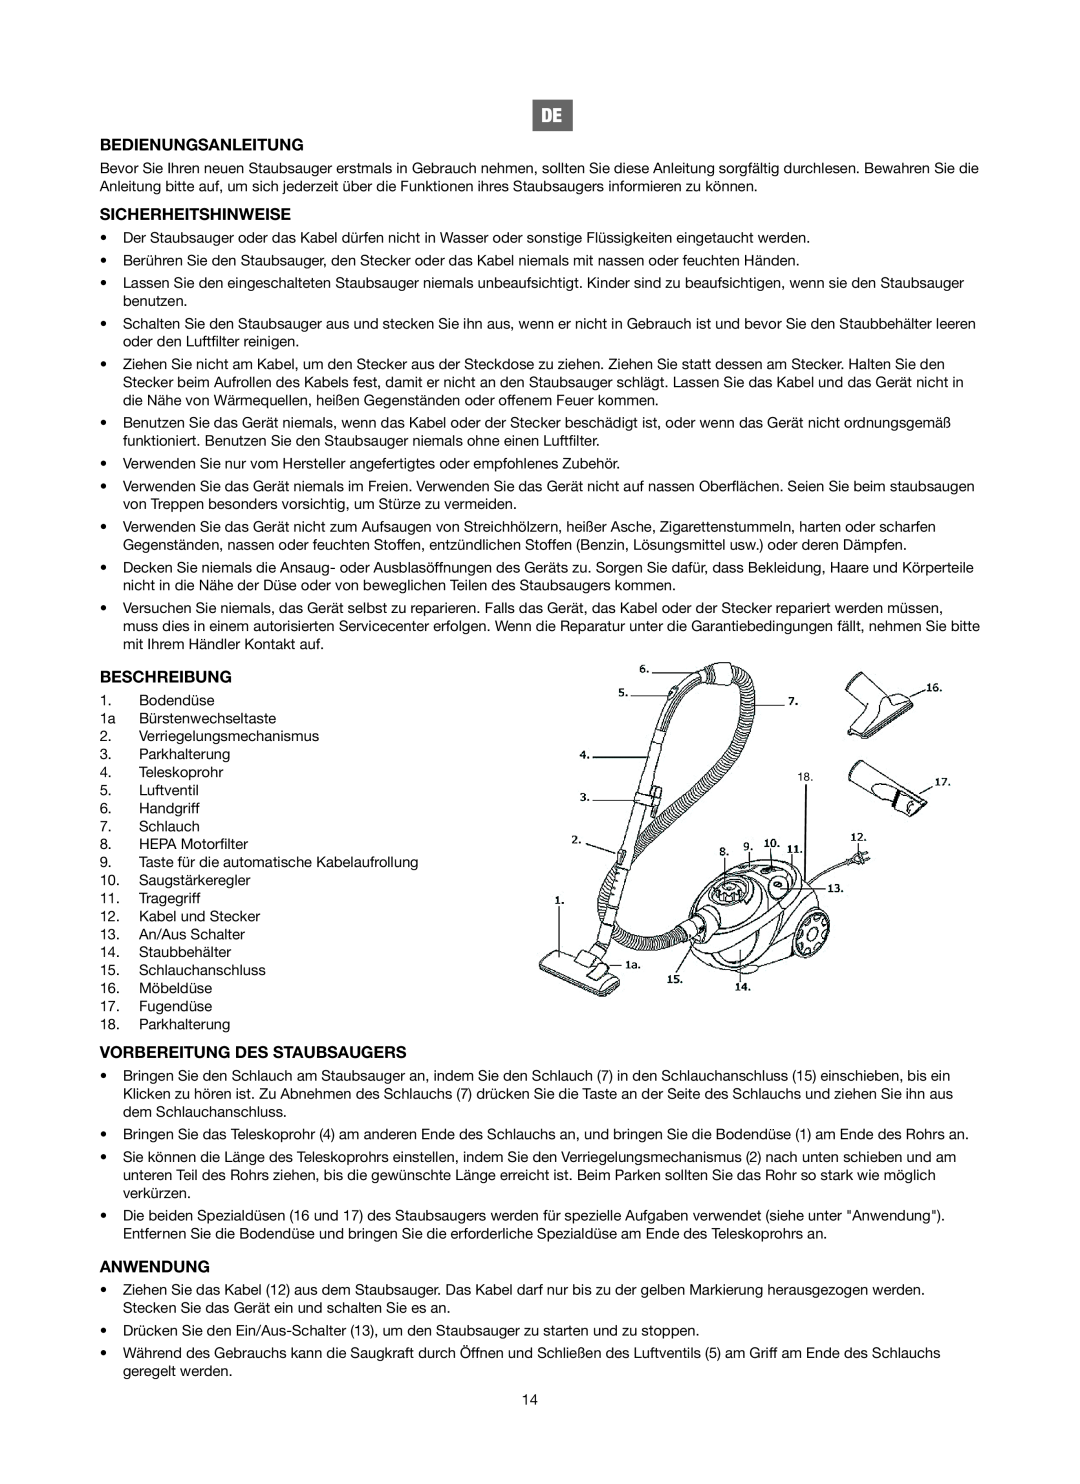 Melissa 740-106 manual Bedienungsanleitung, Sicherheitshinweise, Beschreibung, Vorbereitung Des Staubsaugers, Anwendung 